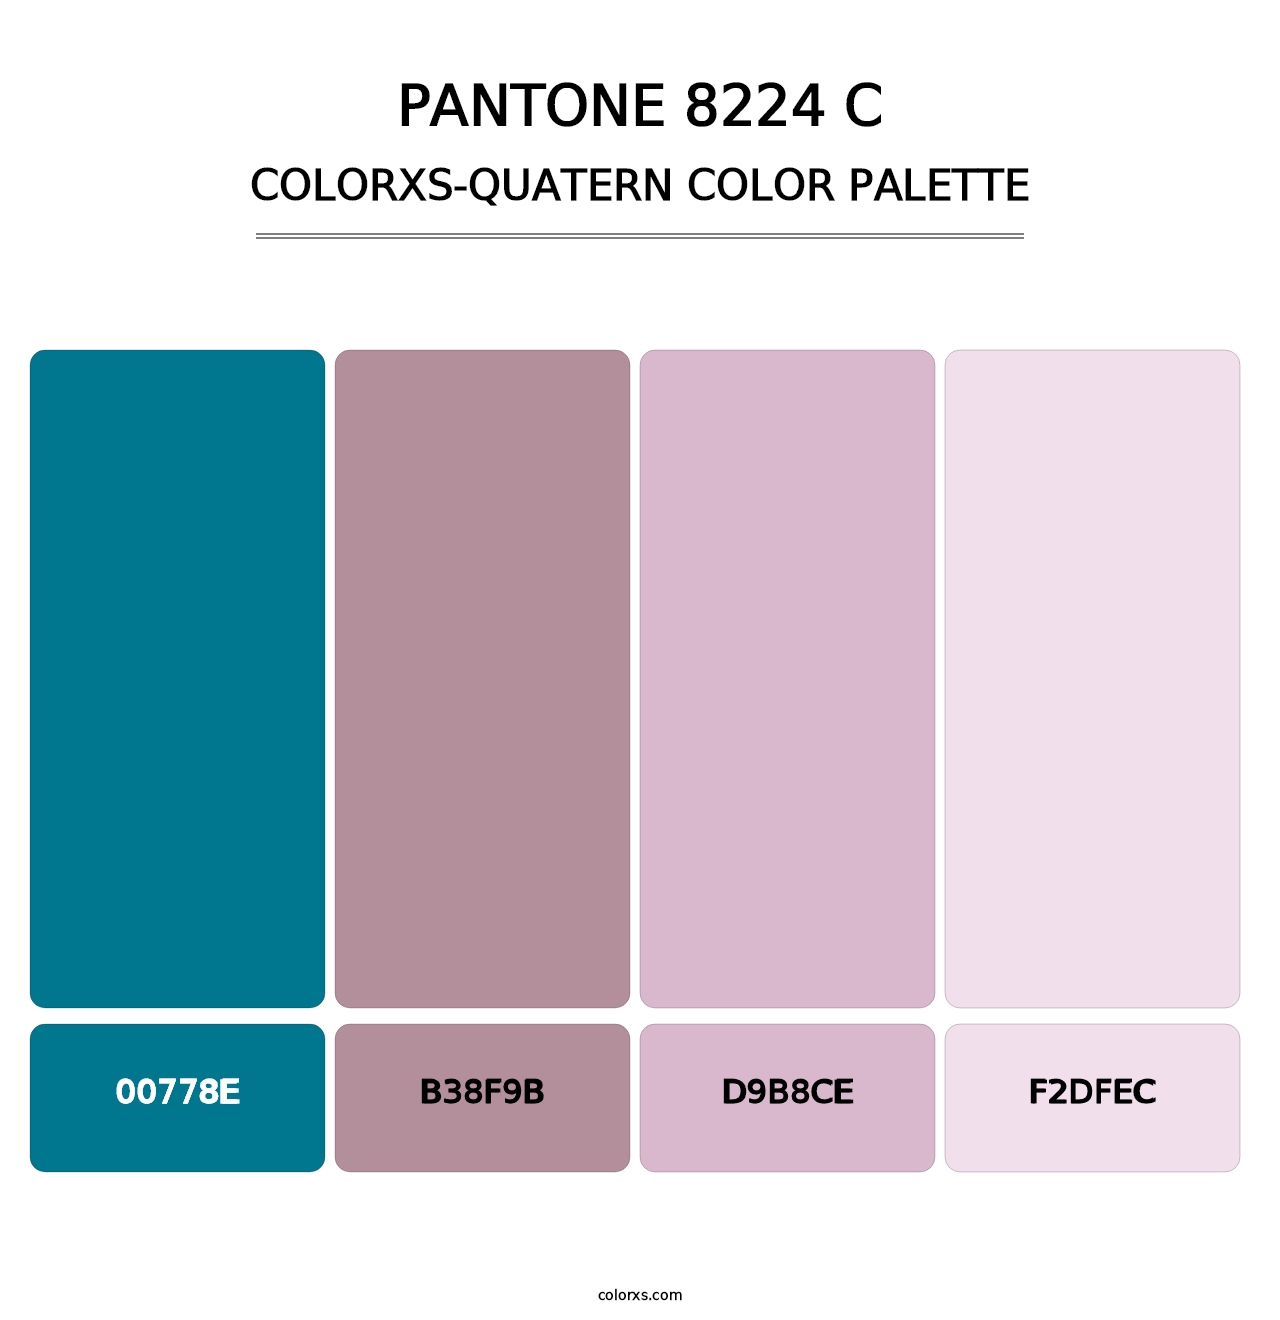 PANTONE 8224 C - Colorxs Quatern Palette